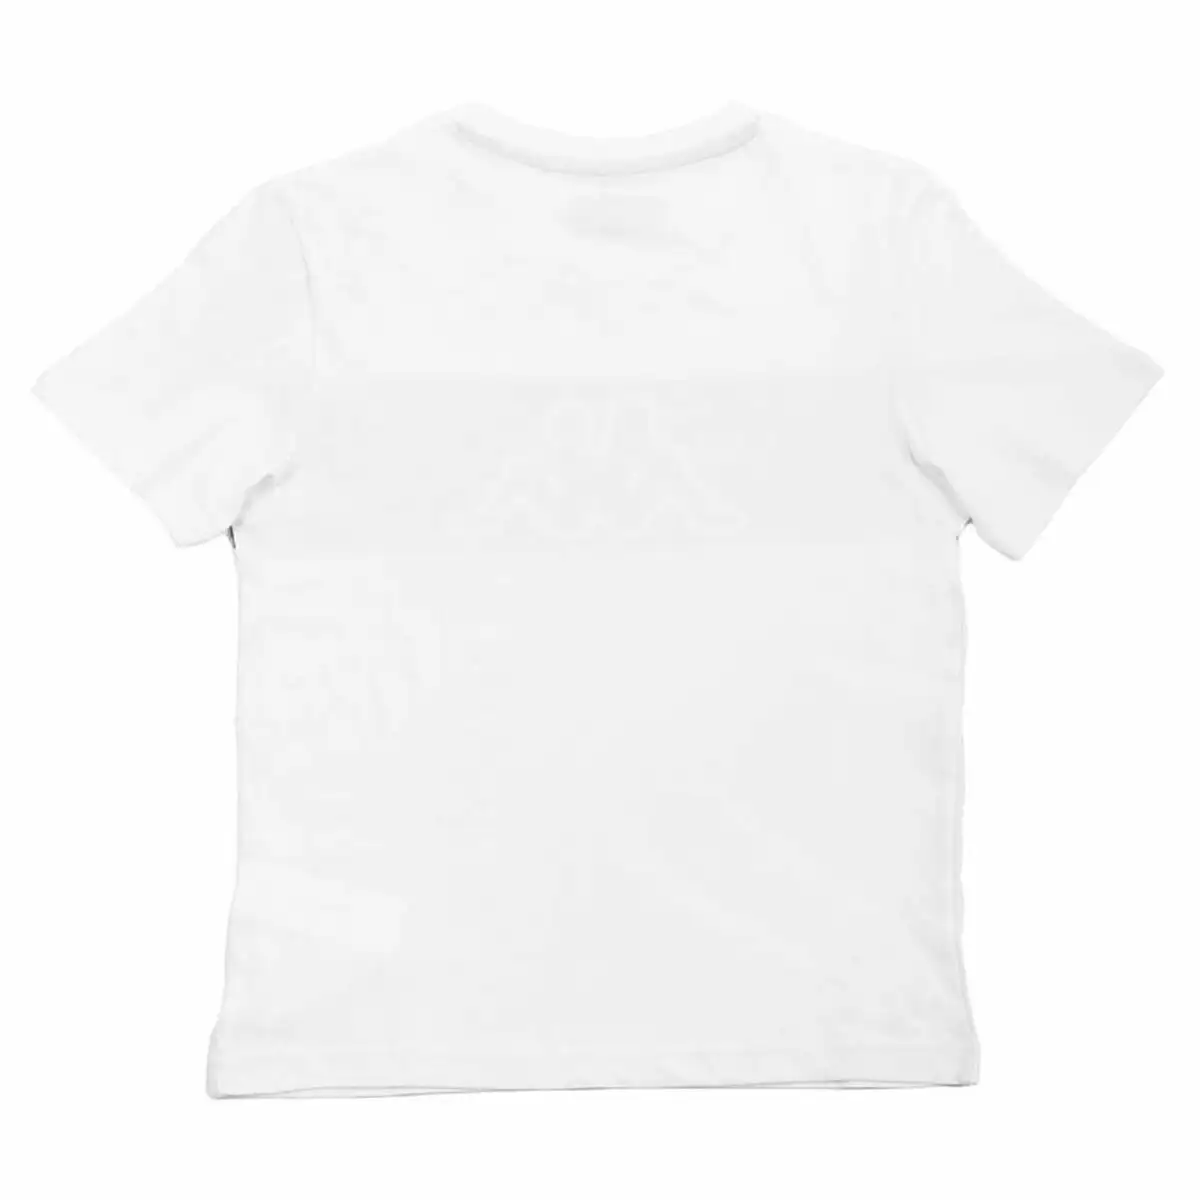 Shirt a manches courtes enfant kappa skoto k blanc_9174. DIAYTAR SENEGAL - L'Art de Choisir, l'Art de Vivre. Parcourez notre boutique en ligne et découvrez des produits qui transforment chaque choix en une expérience enrichissante.